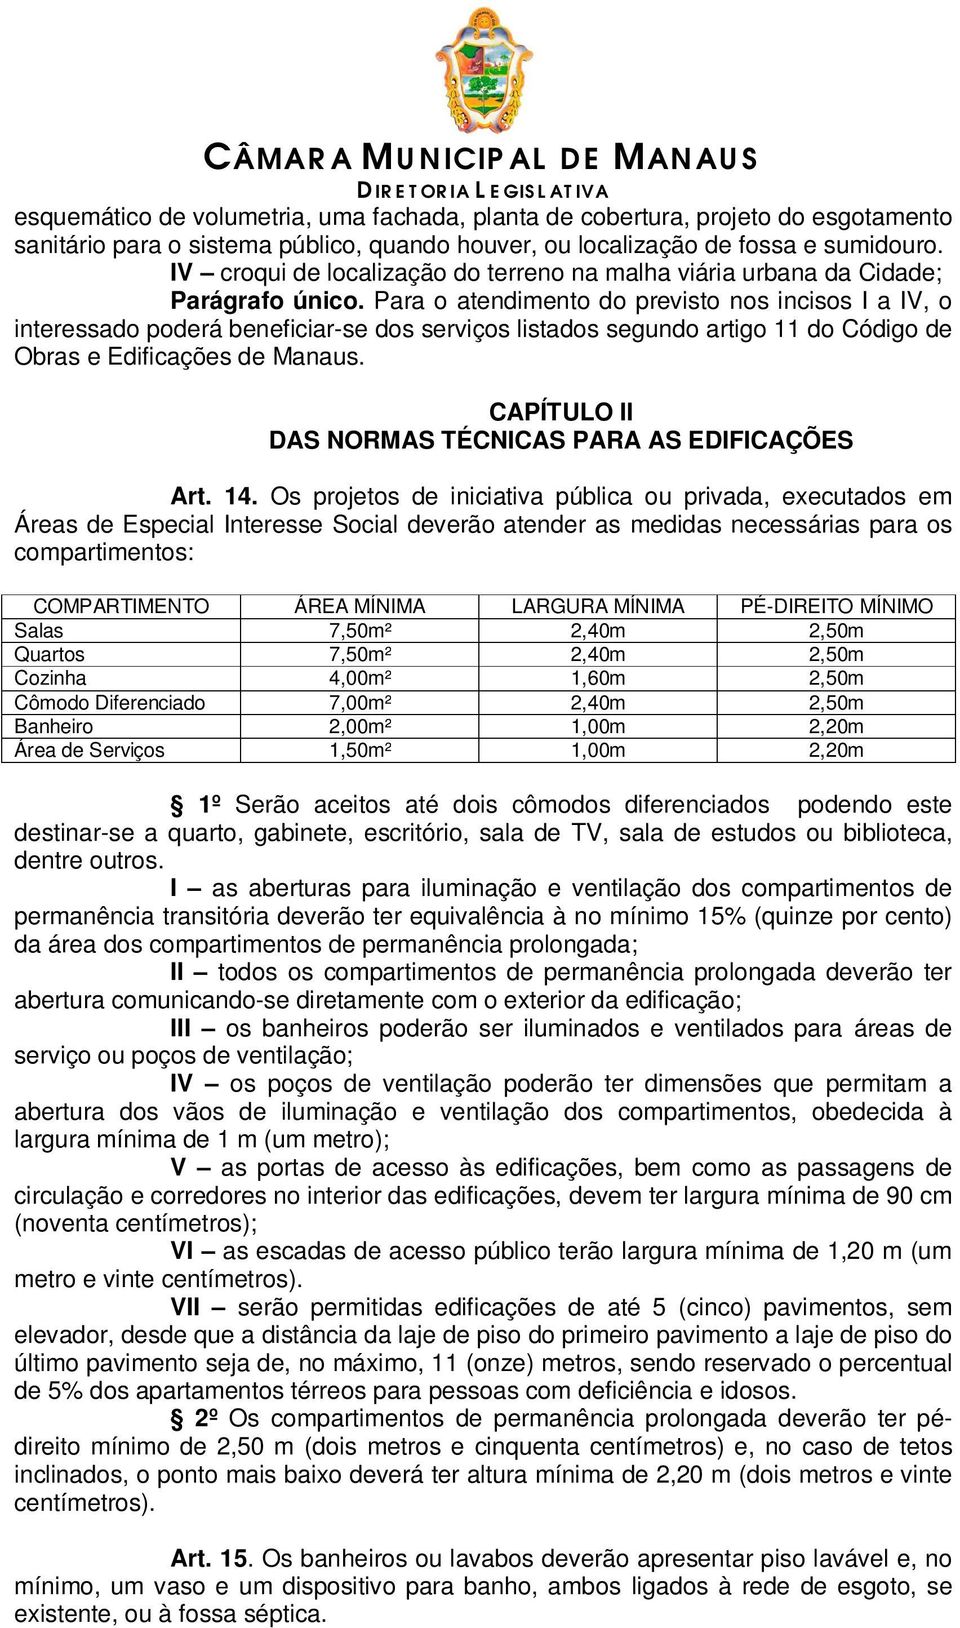 Para o atendimento do previsto nos incisos I a IV, o interessado poderá beneficiar-se dos serviços listados segundo artigo 11 do Código de Obras e Edificações de Manaus.